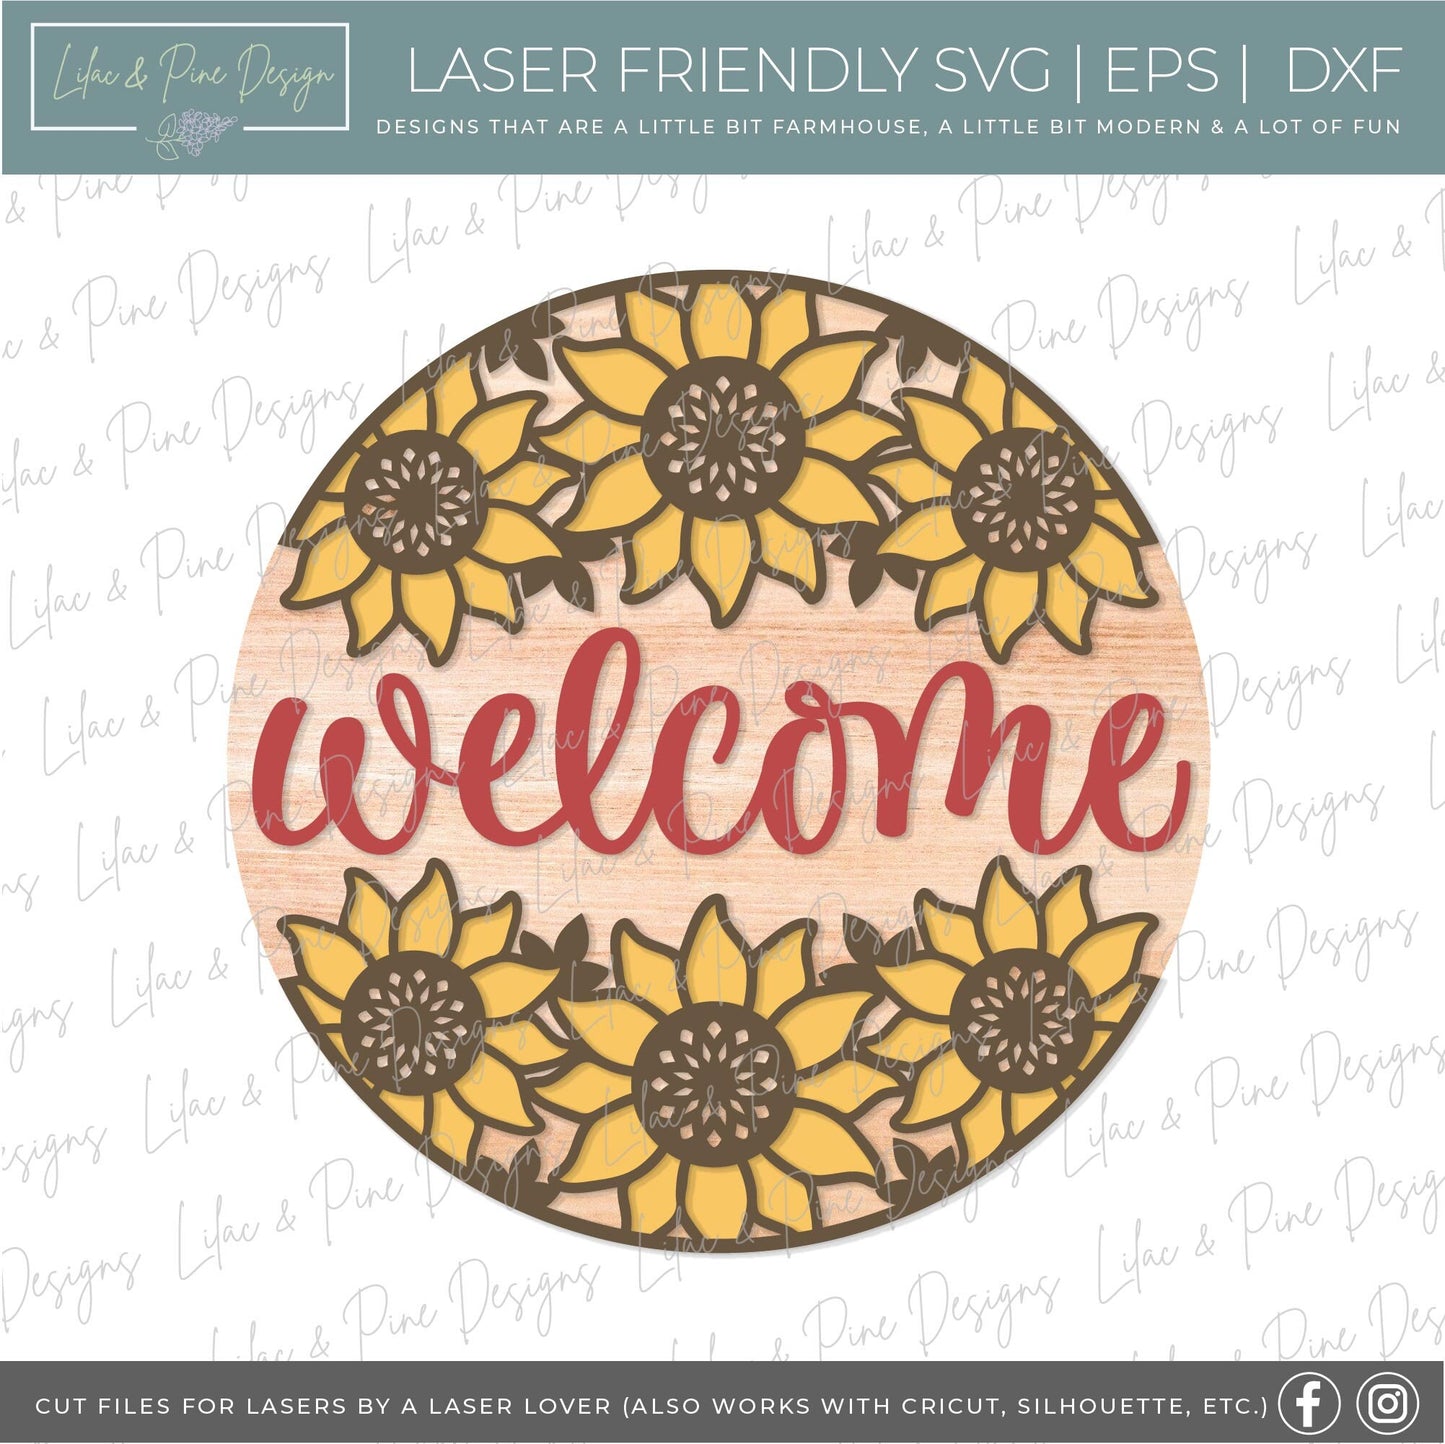 Sunflower door hanger SVG, Floral welcome sign, sunflower welcome sign SVG, fall floral sign, Glowforge SVG, laser cut file